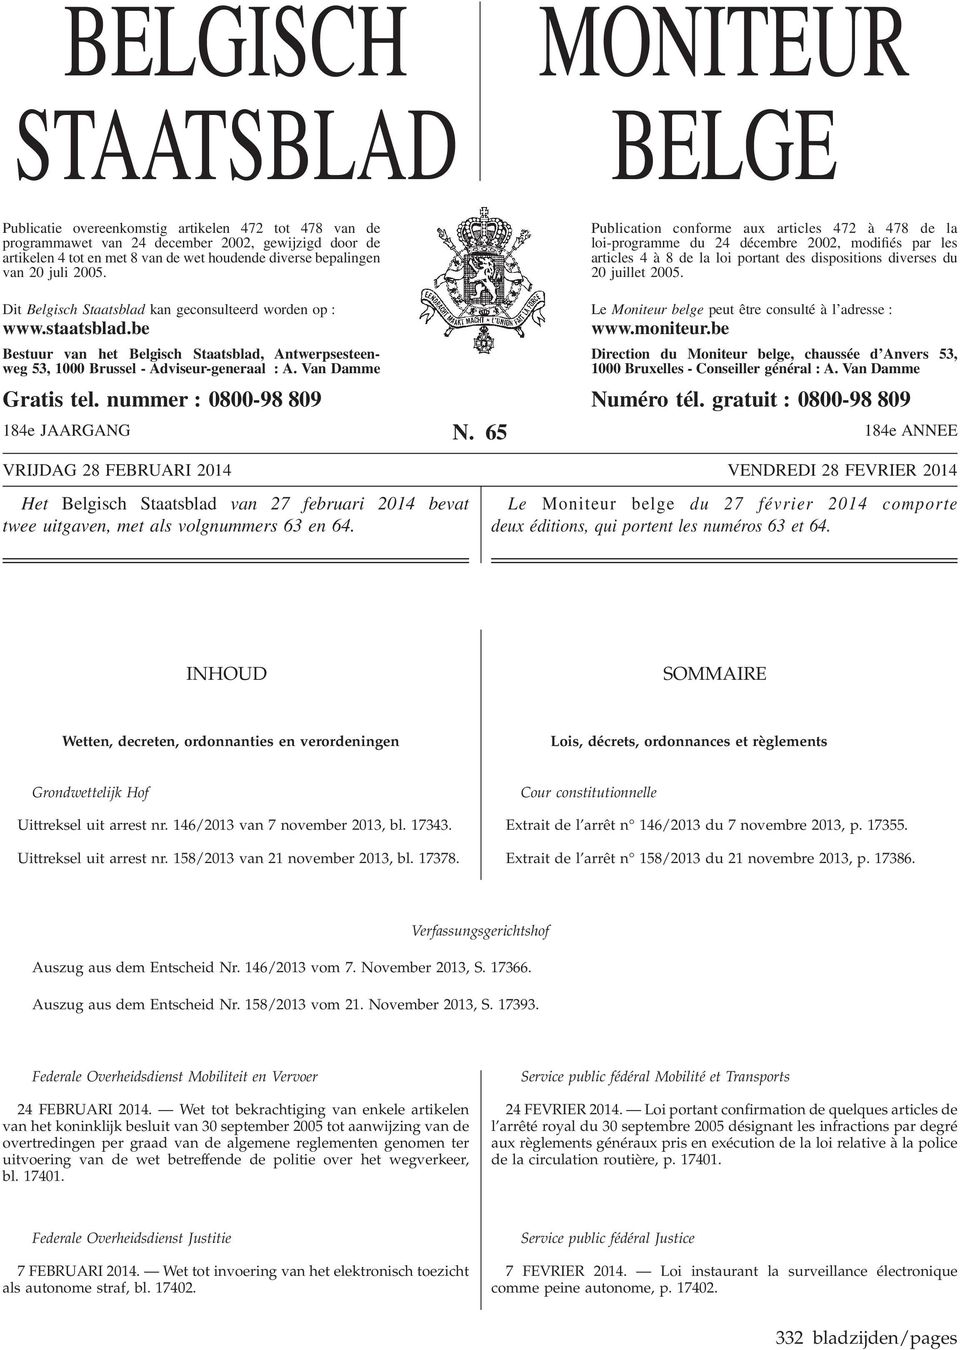 Publication conforme aux articles 472 à 478 de la loi-programme du 24 décembre 2002, modifiés par les articles 4 à 8 de la loi portant des dispositions diverses du 20 juillet 2005.